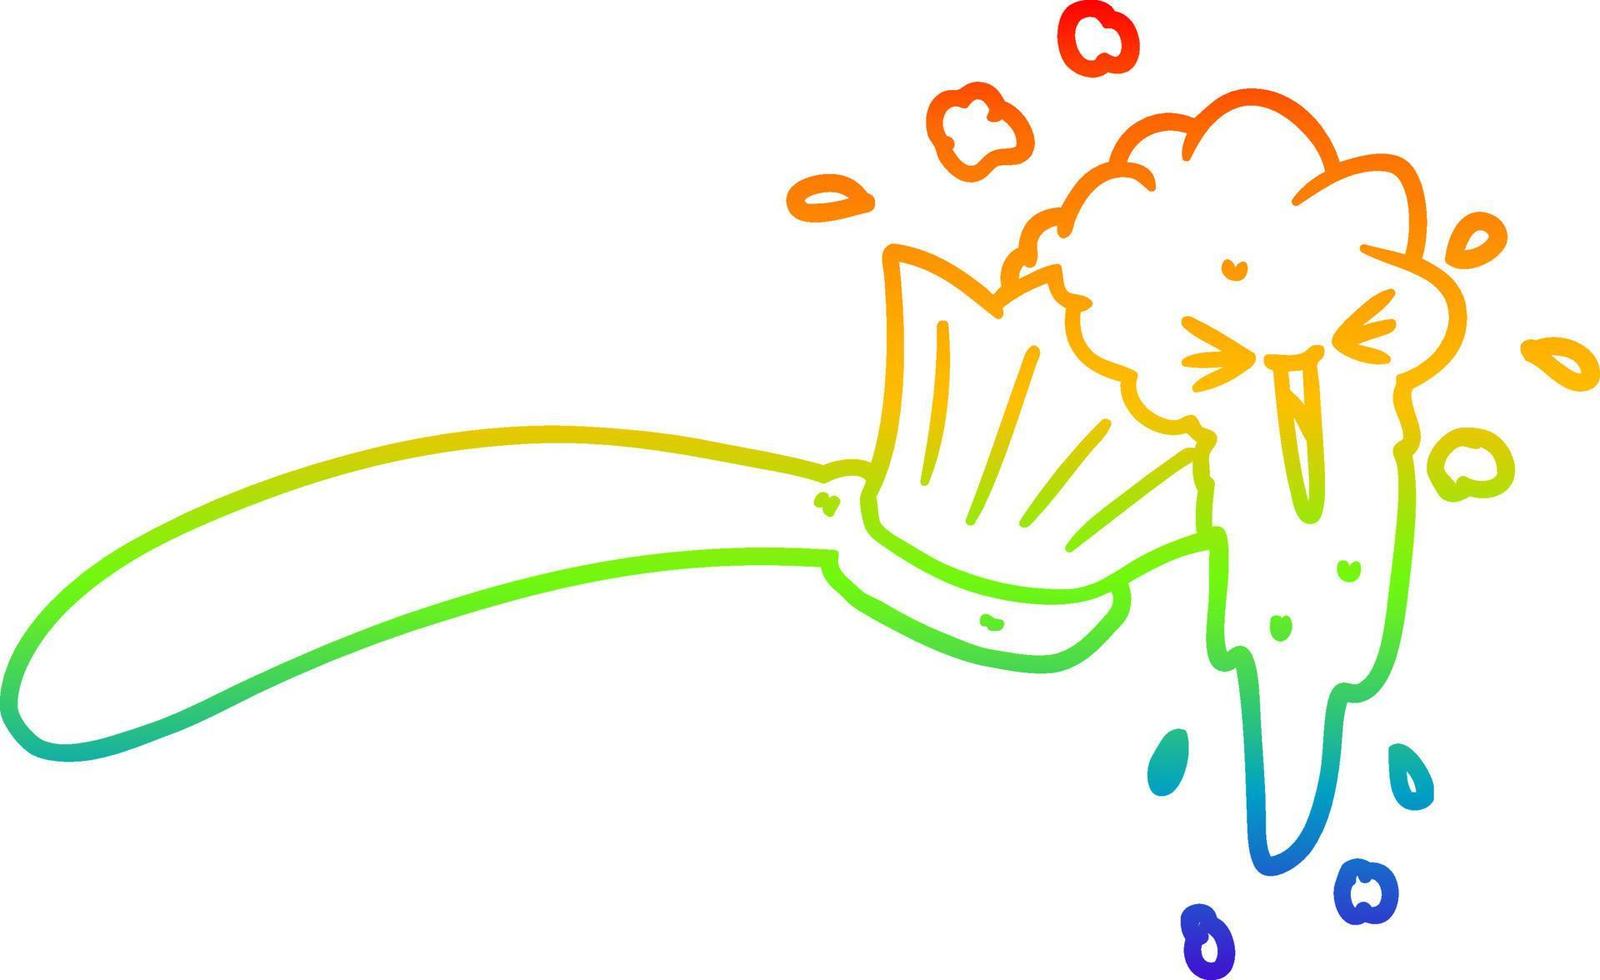 arcobaleno gradiente linea disegno cartone animato spazzolino da denti e dentifricio vettore